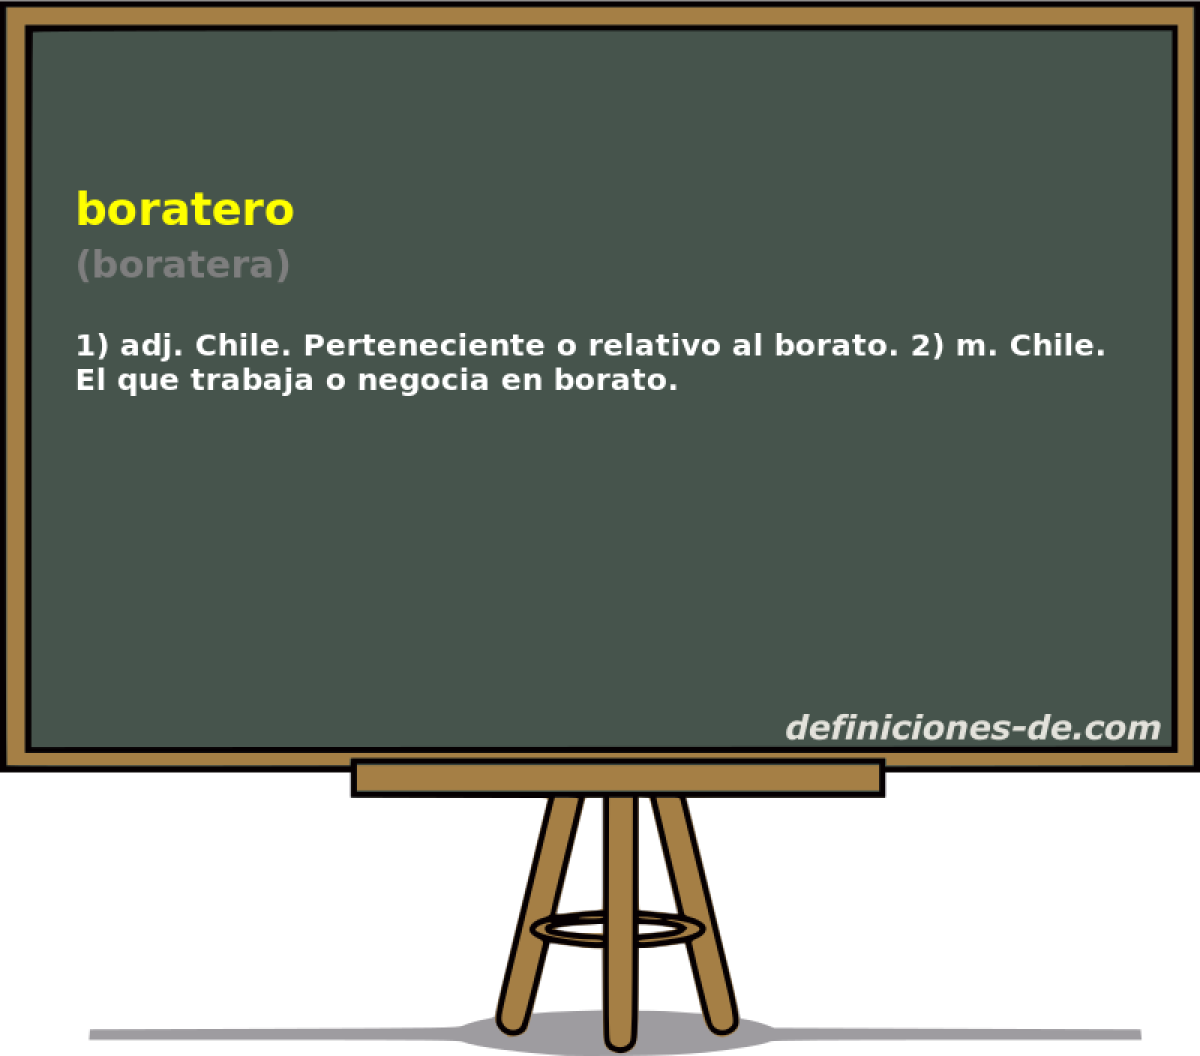 boratero (boratera)